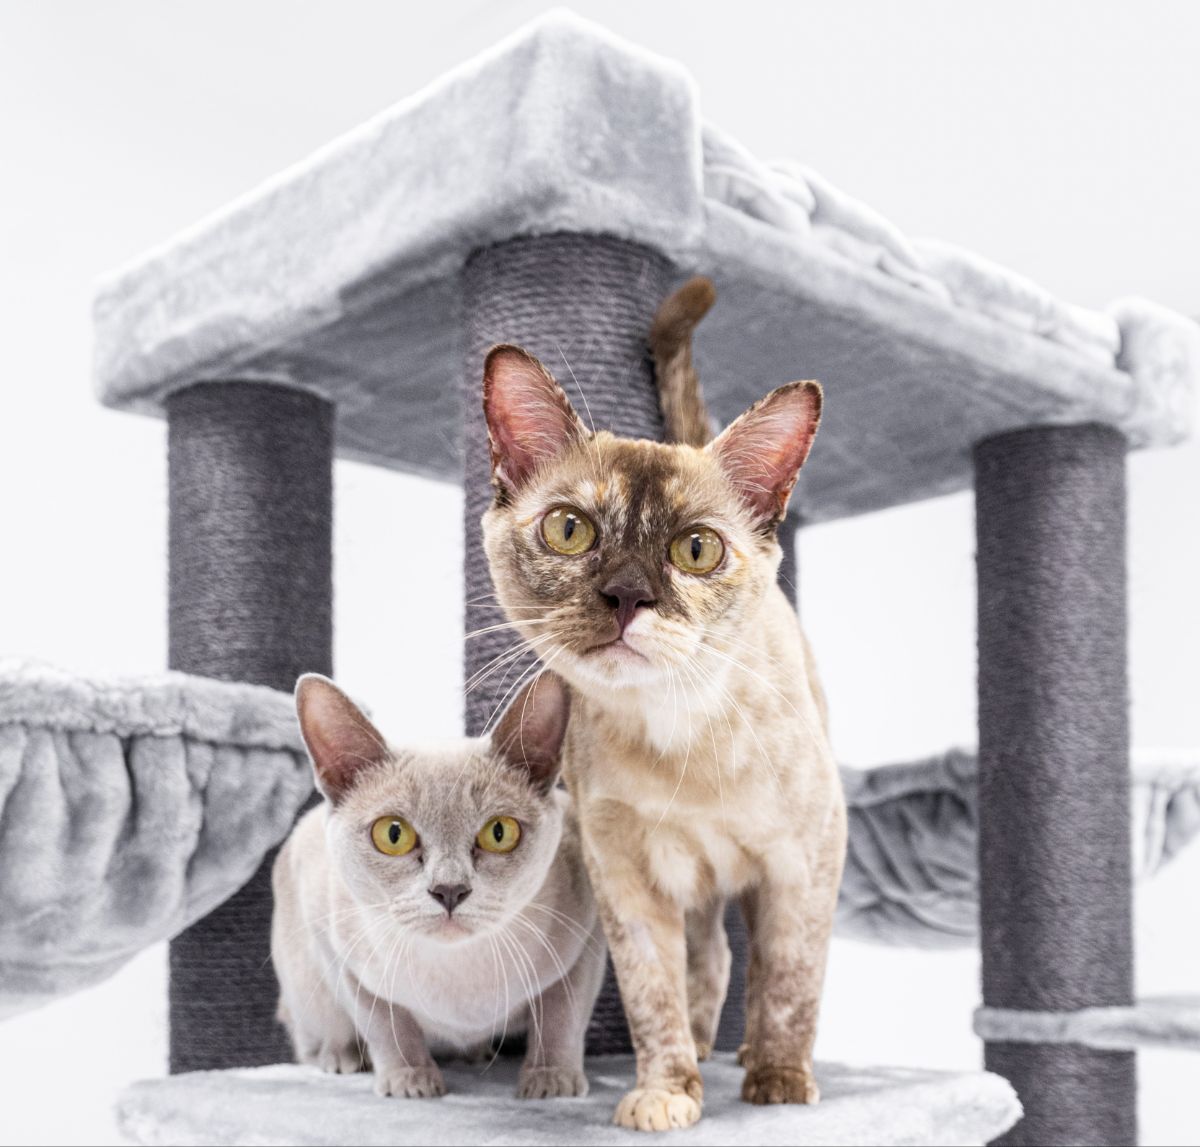 Two curious Burmese cats.